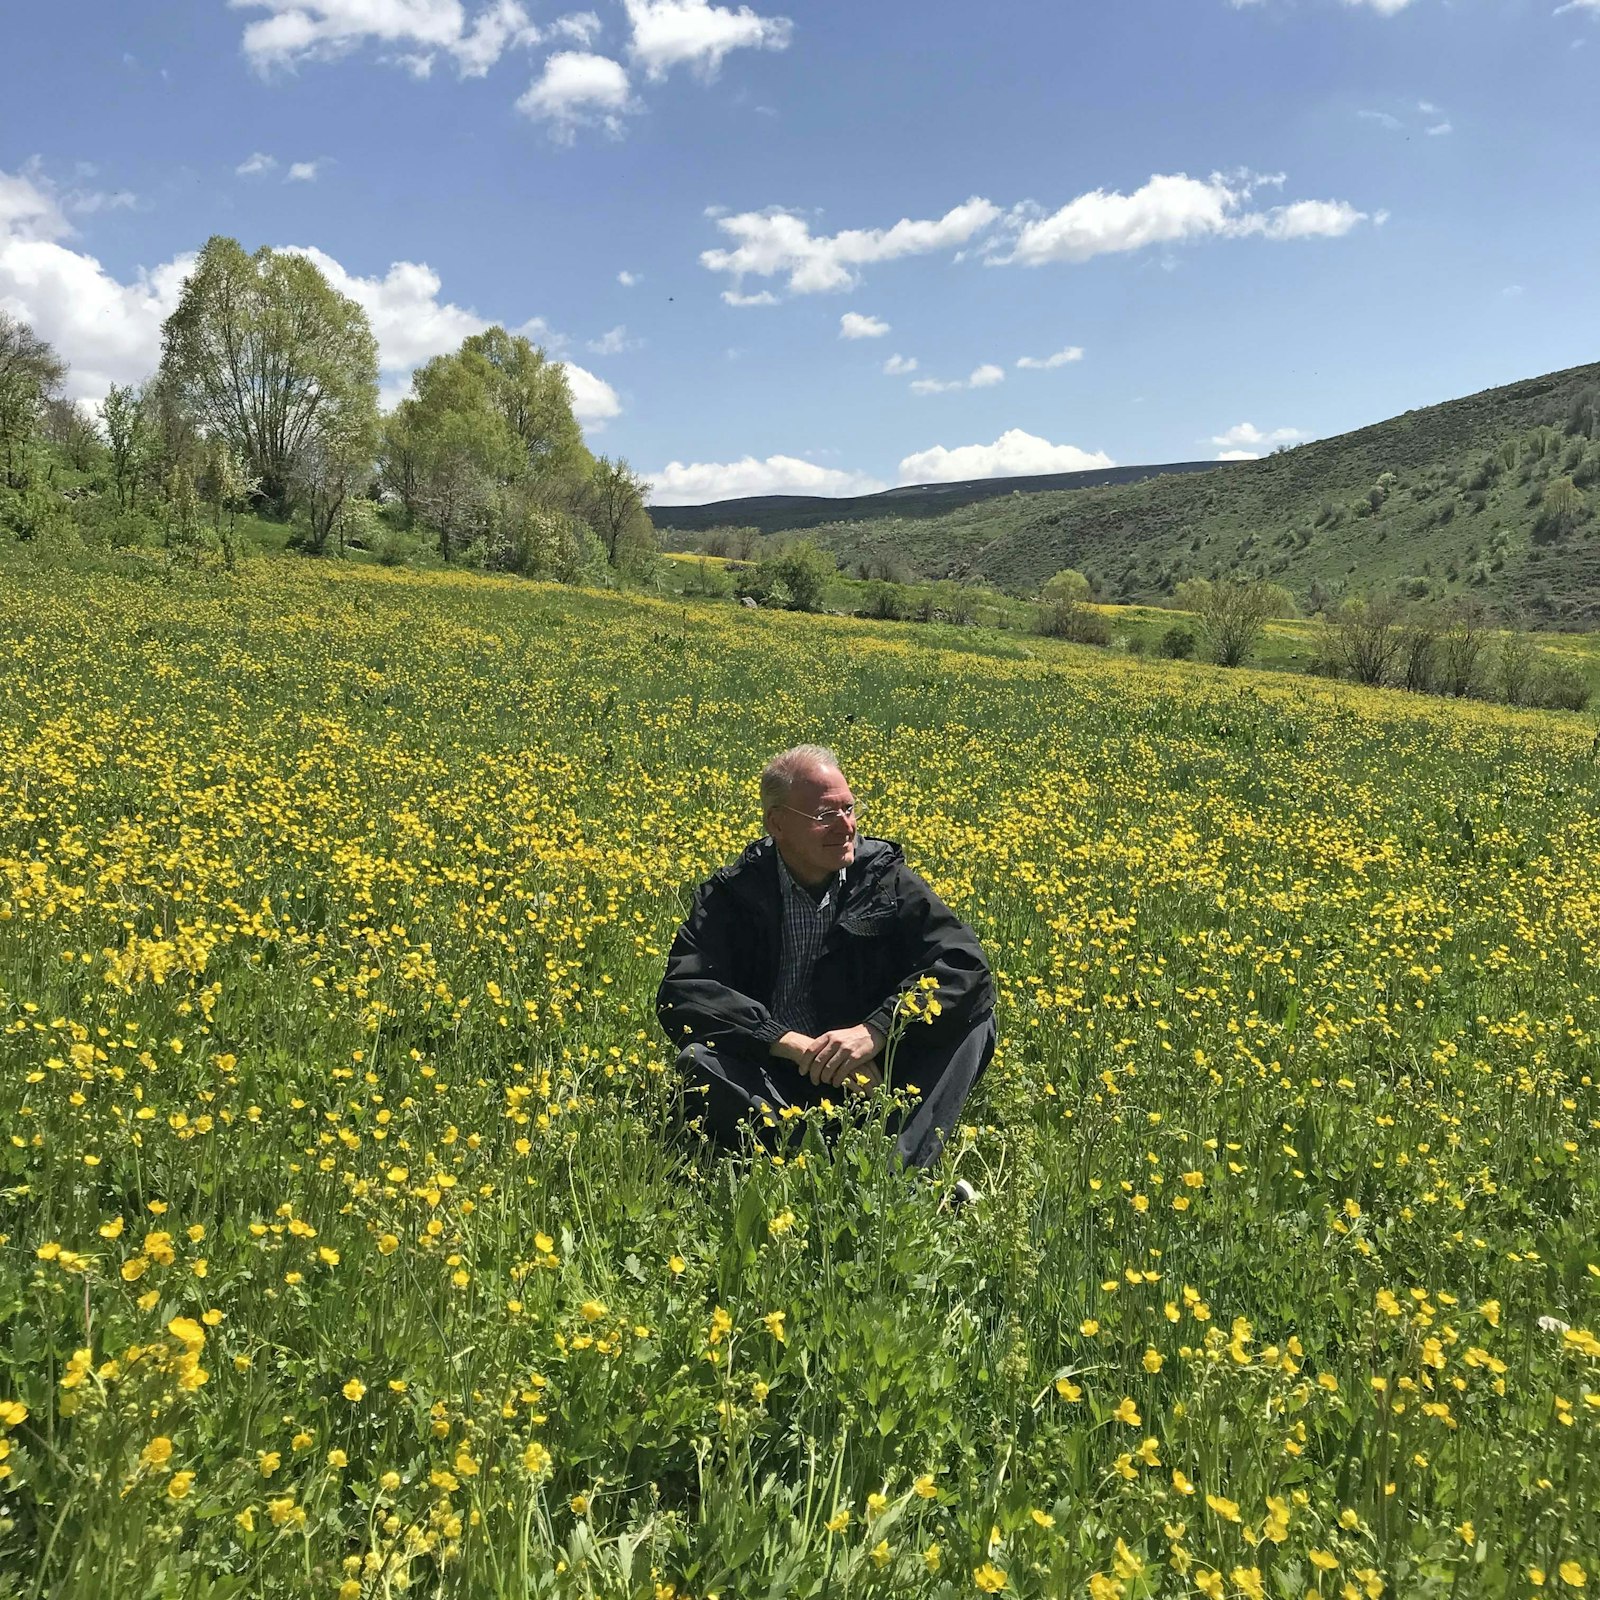 El arzobispo Russell se detiene en un prado de flores silvestres durante una caminata en la provincia de Bingol, al este de Turquía. El arzobispo Russell fue nuncio apostólico en la nación de Europa del Este durante seis años, desde 2016. (Cortesía del arzobispo Paul F. Russell)